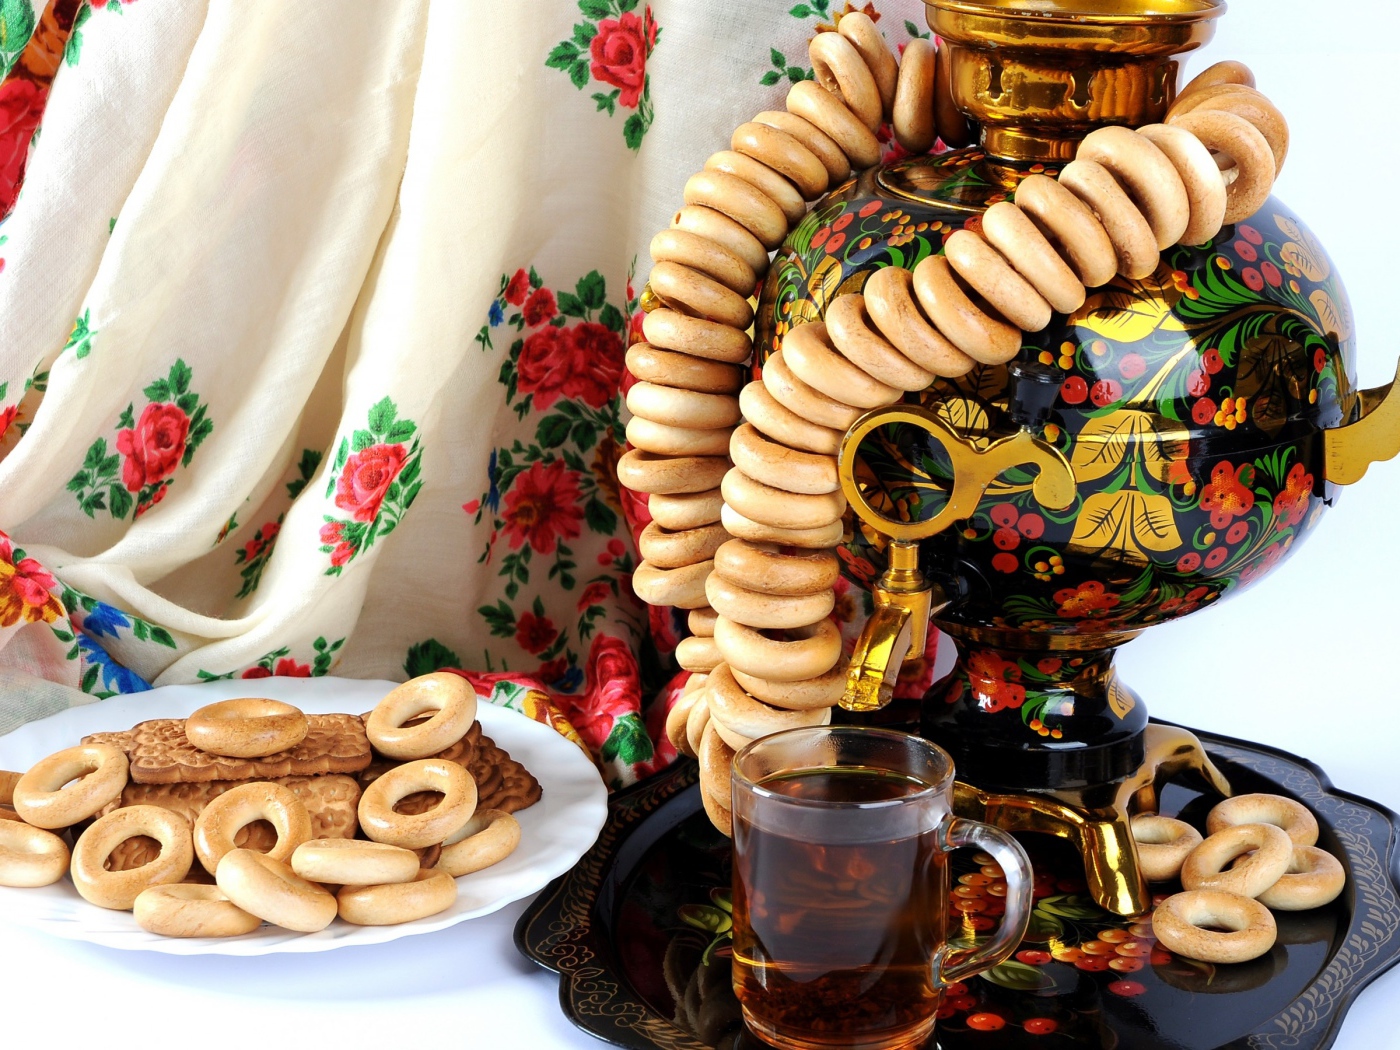 Самовар на столе с баранками и печеньем  на праздник Масленица 2020